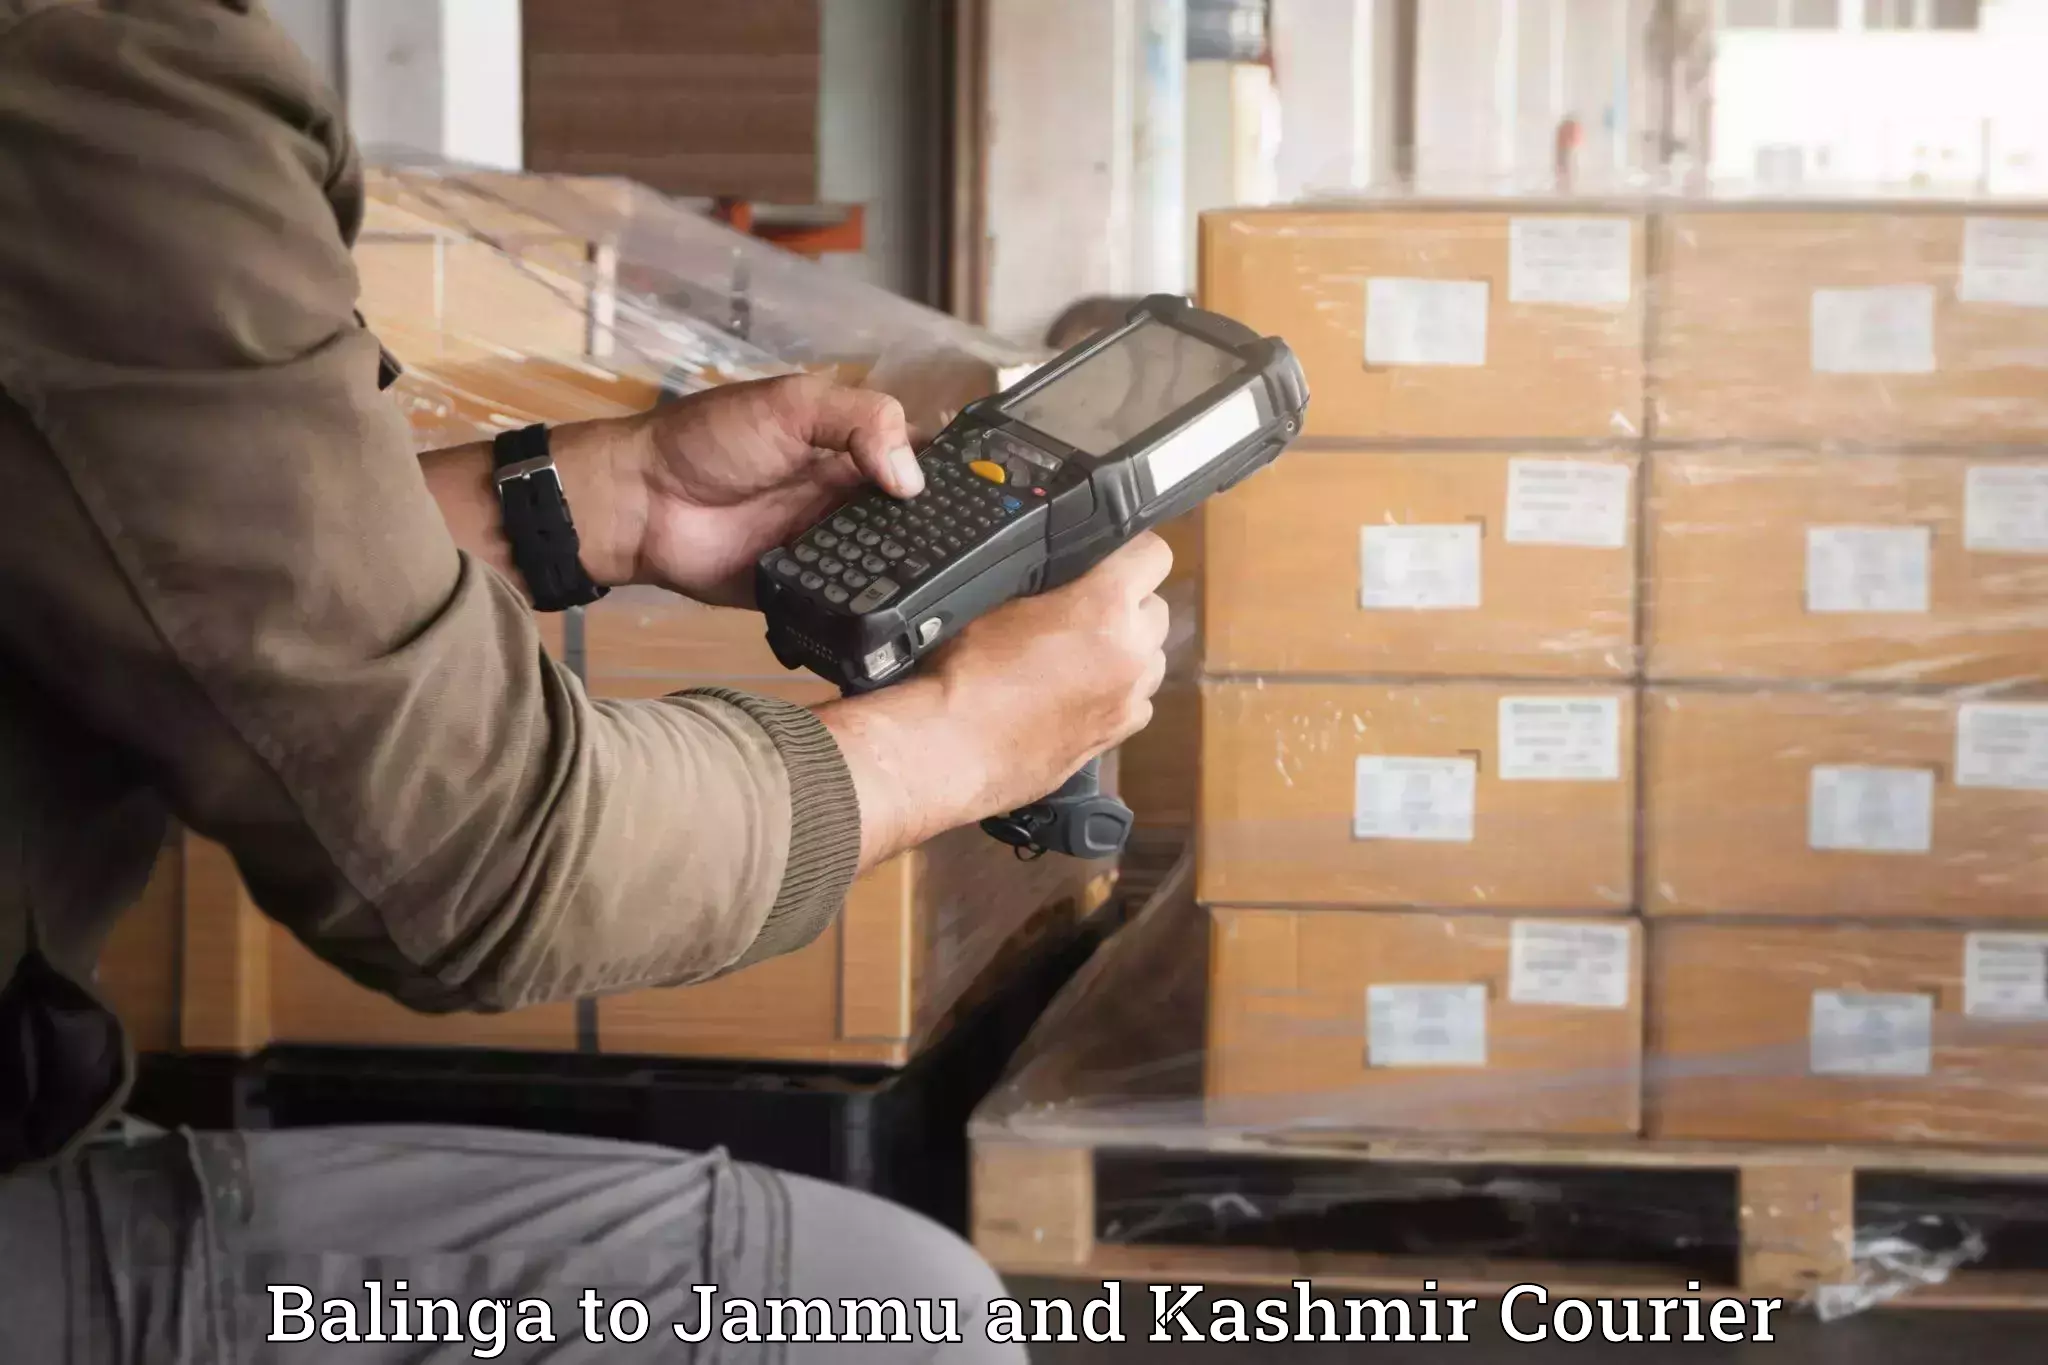 Furniture transport company Balinga to Jammu and Kashmir